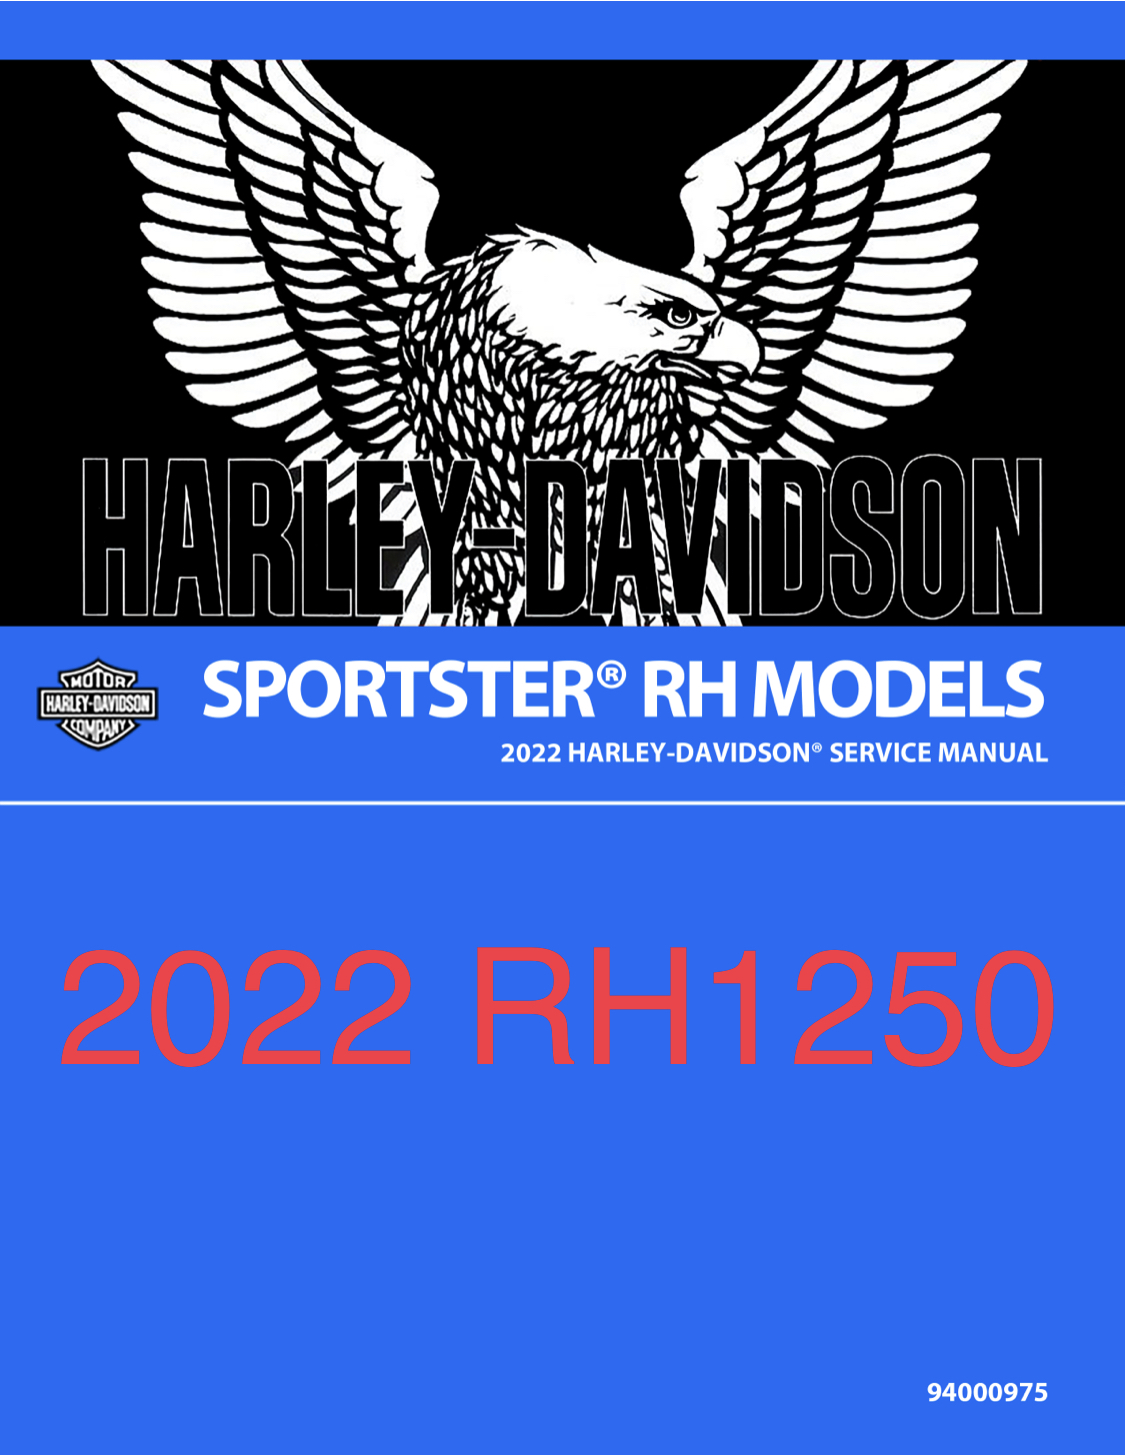 2022 哈雷戴维森 SPORSTER RH1250S 服务手册插图